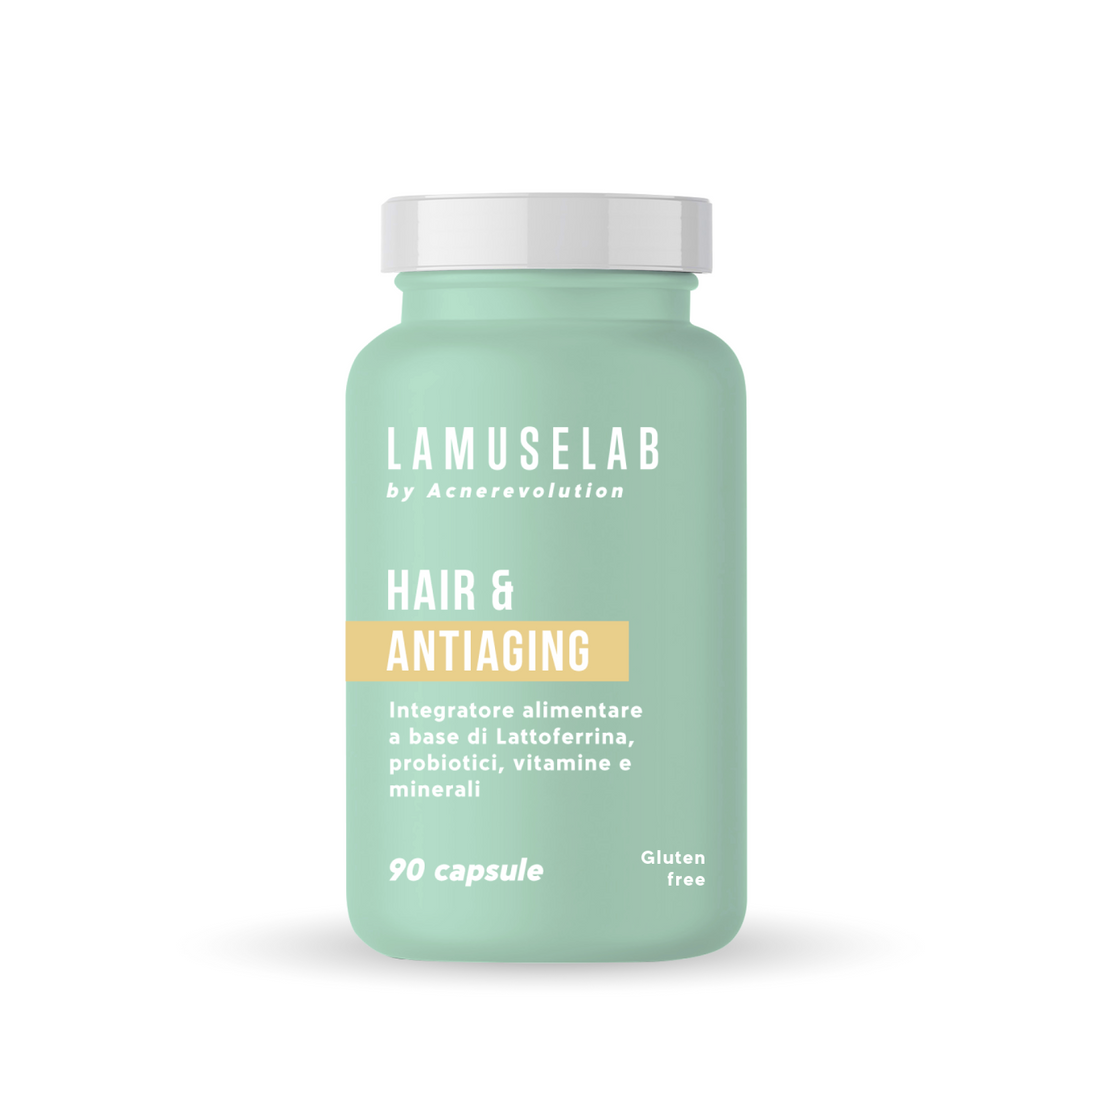 HAIR AND ANTI-AGING, Integratore alimentare Con Lattoferrina, Probiotici, Vitamine e Minerali 90 Capsule - LaMuseLab